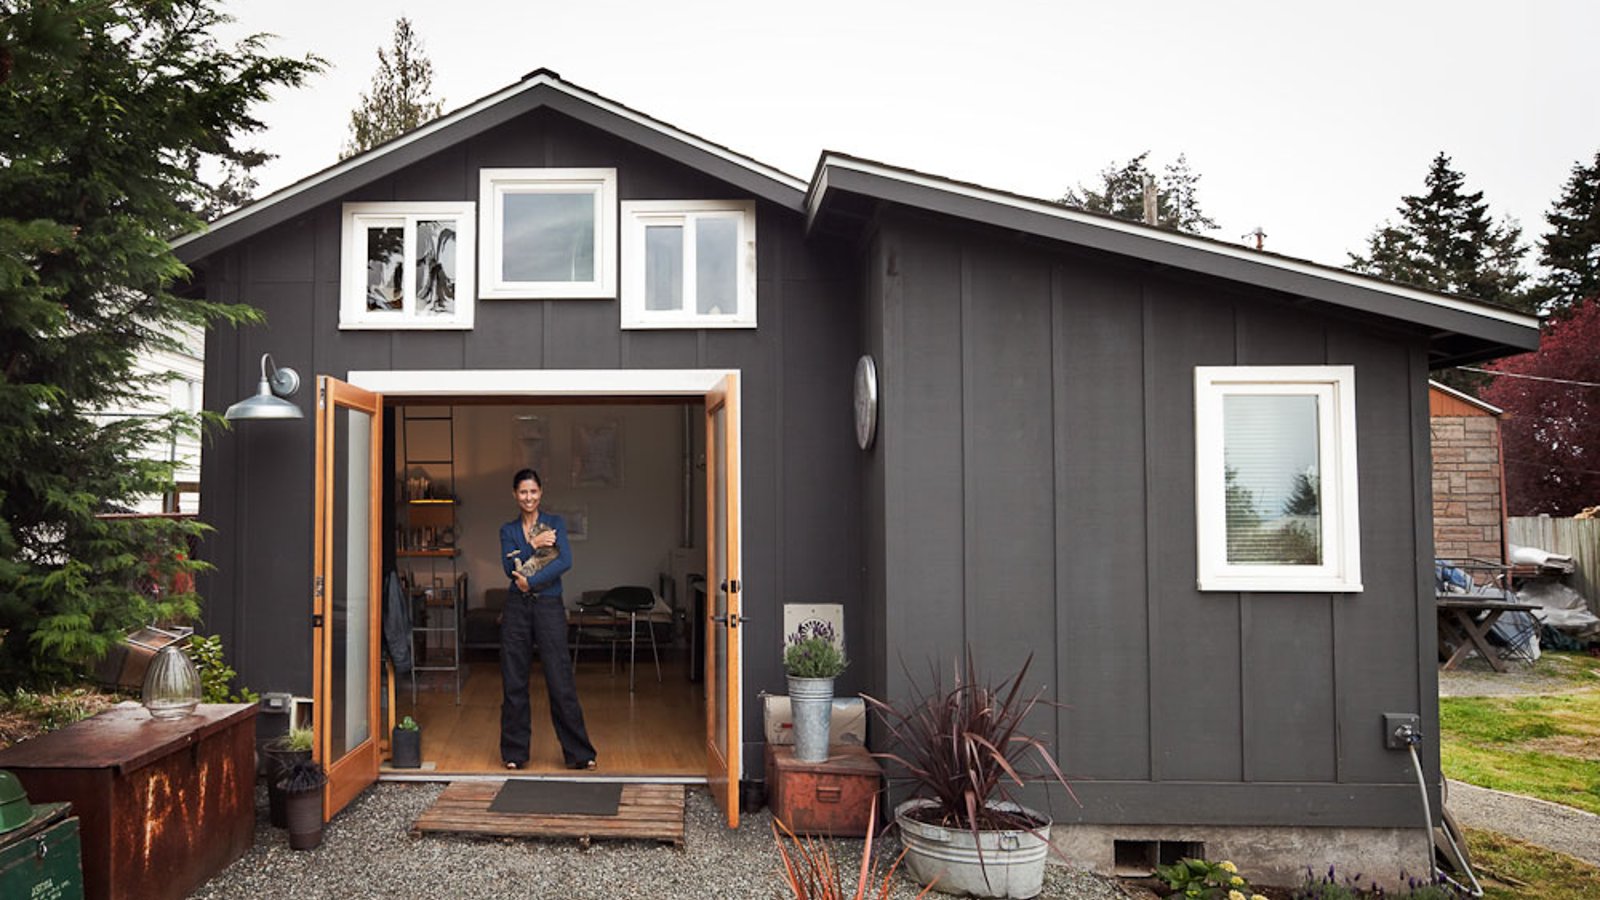 Étonnante transformation d’un garage en une superbe mini-maison